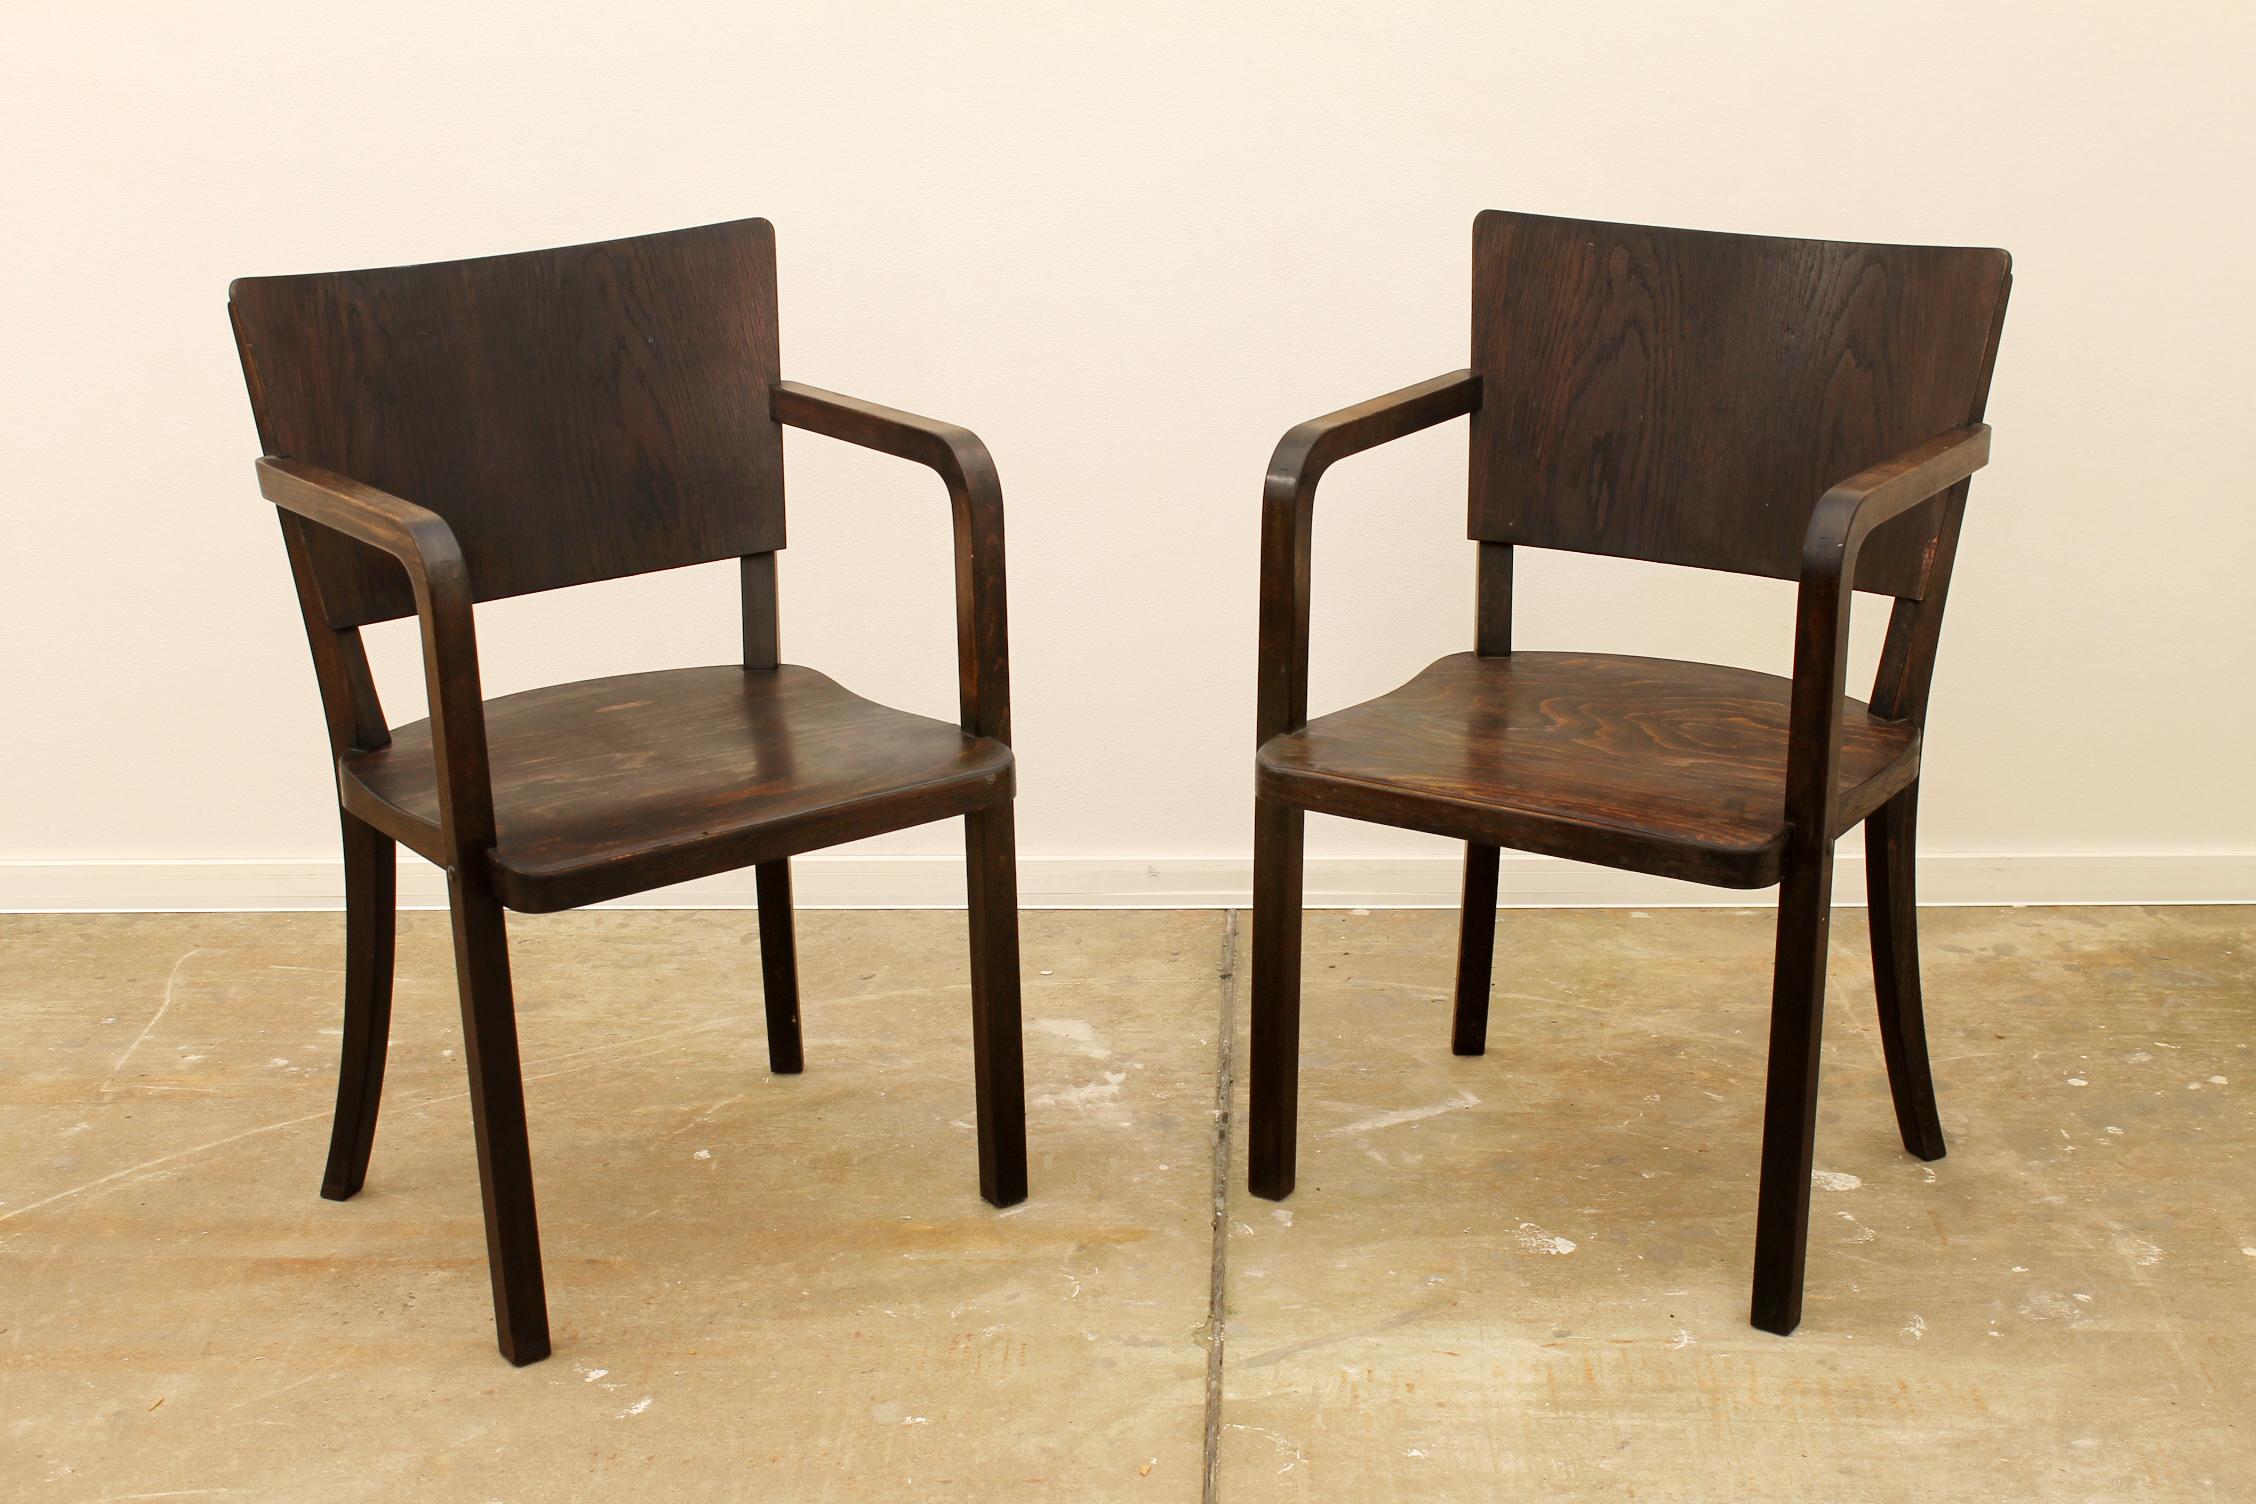 Diese Sessel wurden in der ehemaligen Tschechoslowakei in den 1950er Jahren hergestellt.
Hergestellt aus dunkel gebeiztem Buchenholz.
Kann als Bürostuhl oder Schreibtischstuhl verwendet werden.
Sie sind in sehr gutem Vintage-Zustand, mit leichten